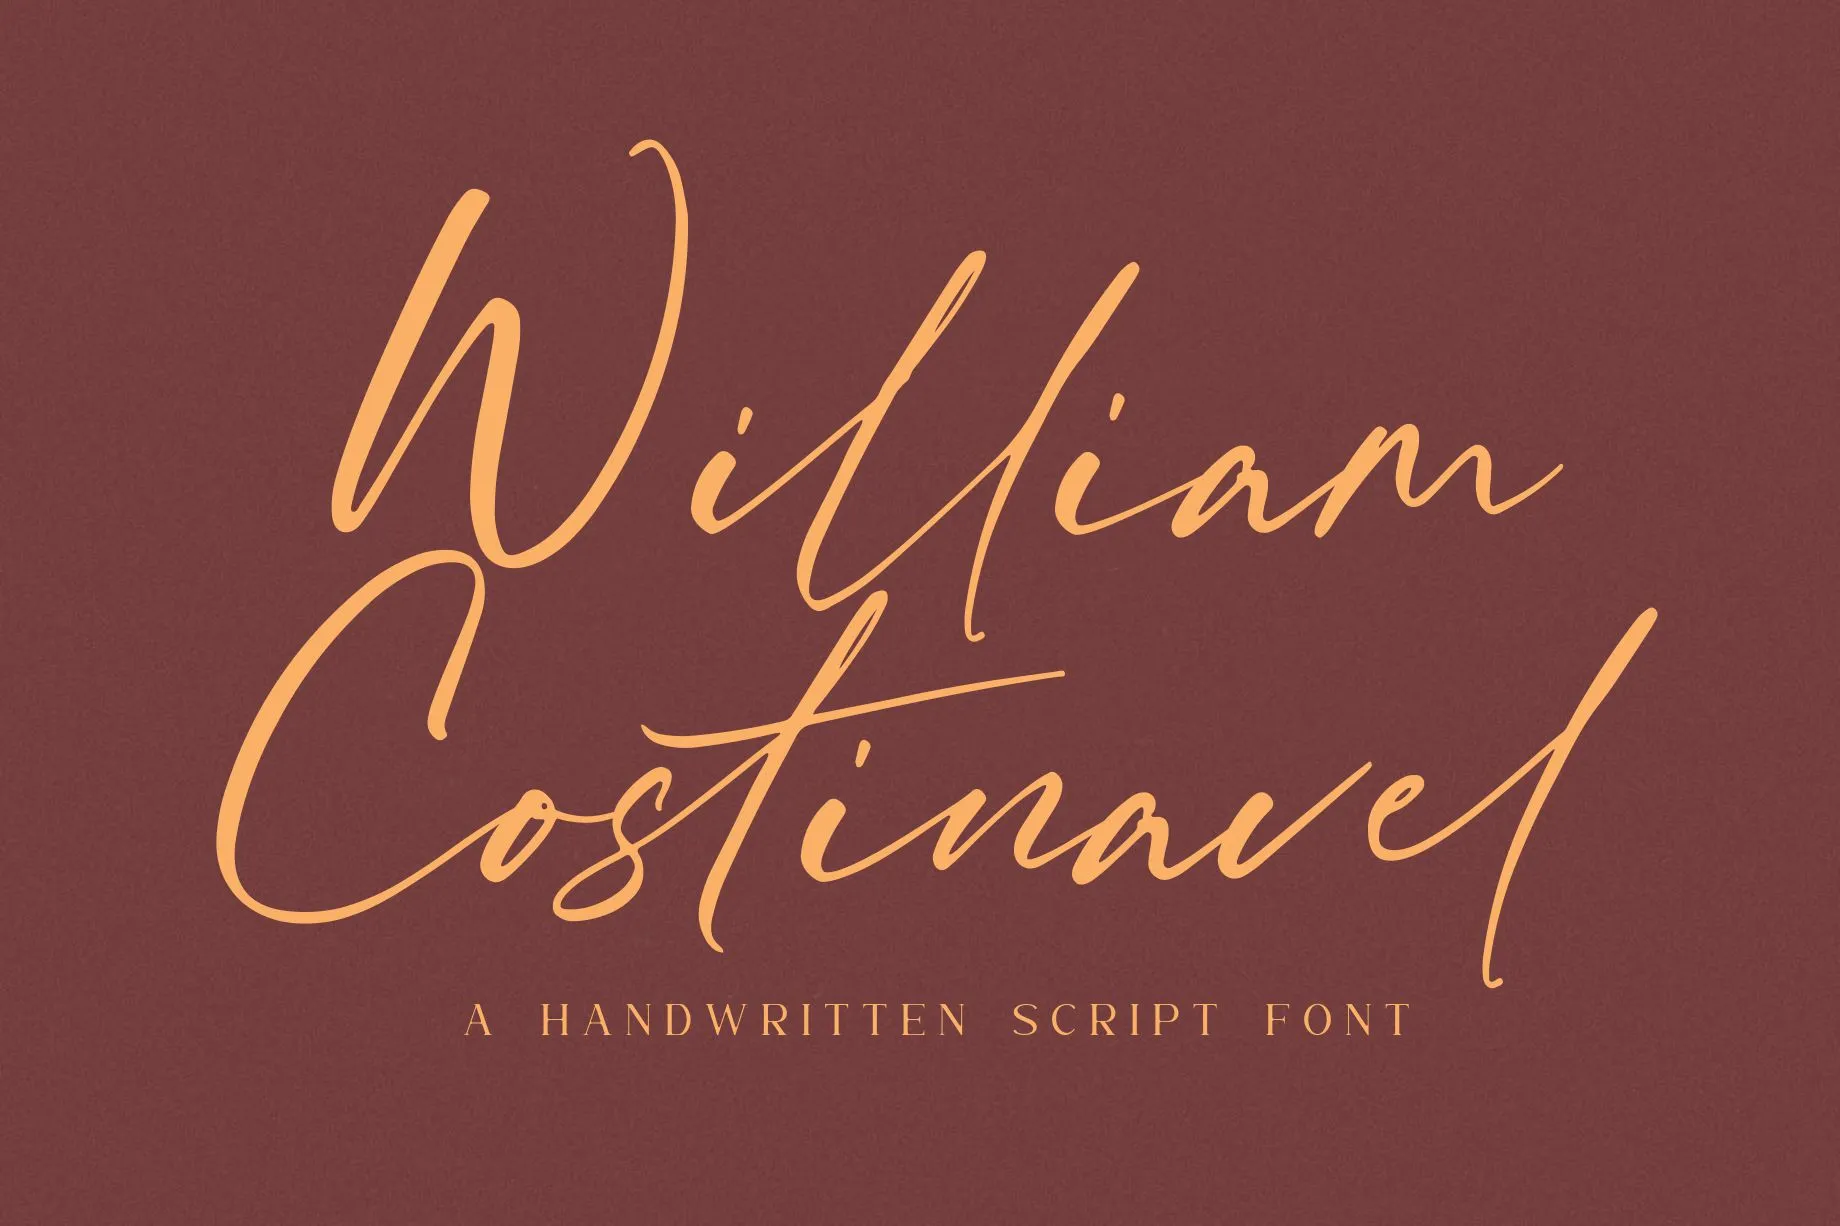 William Costinavel Handwritten Script Font